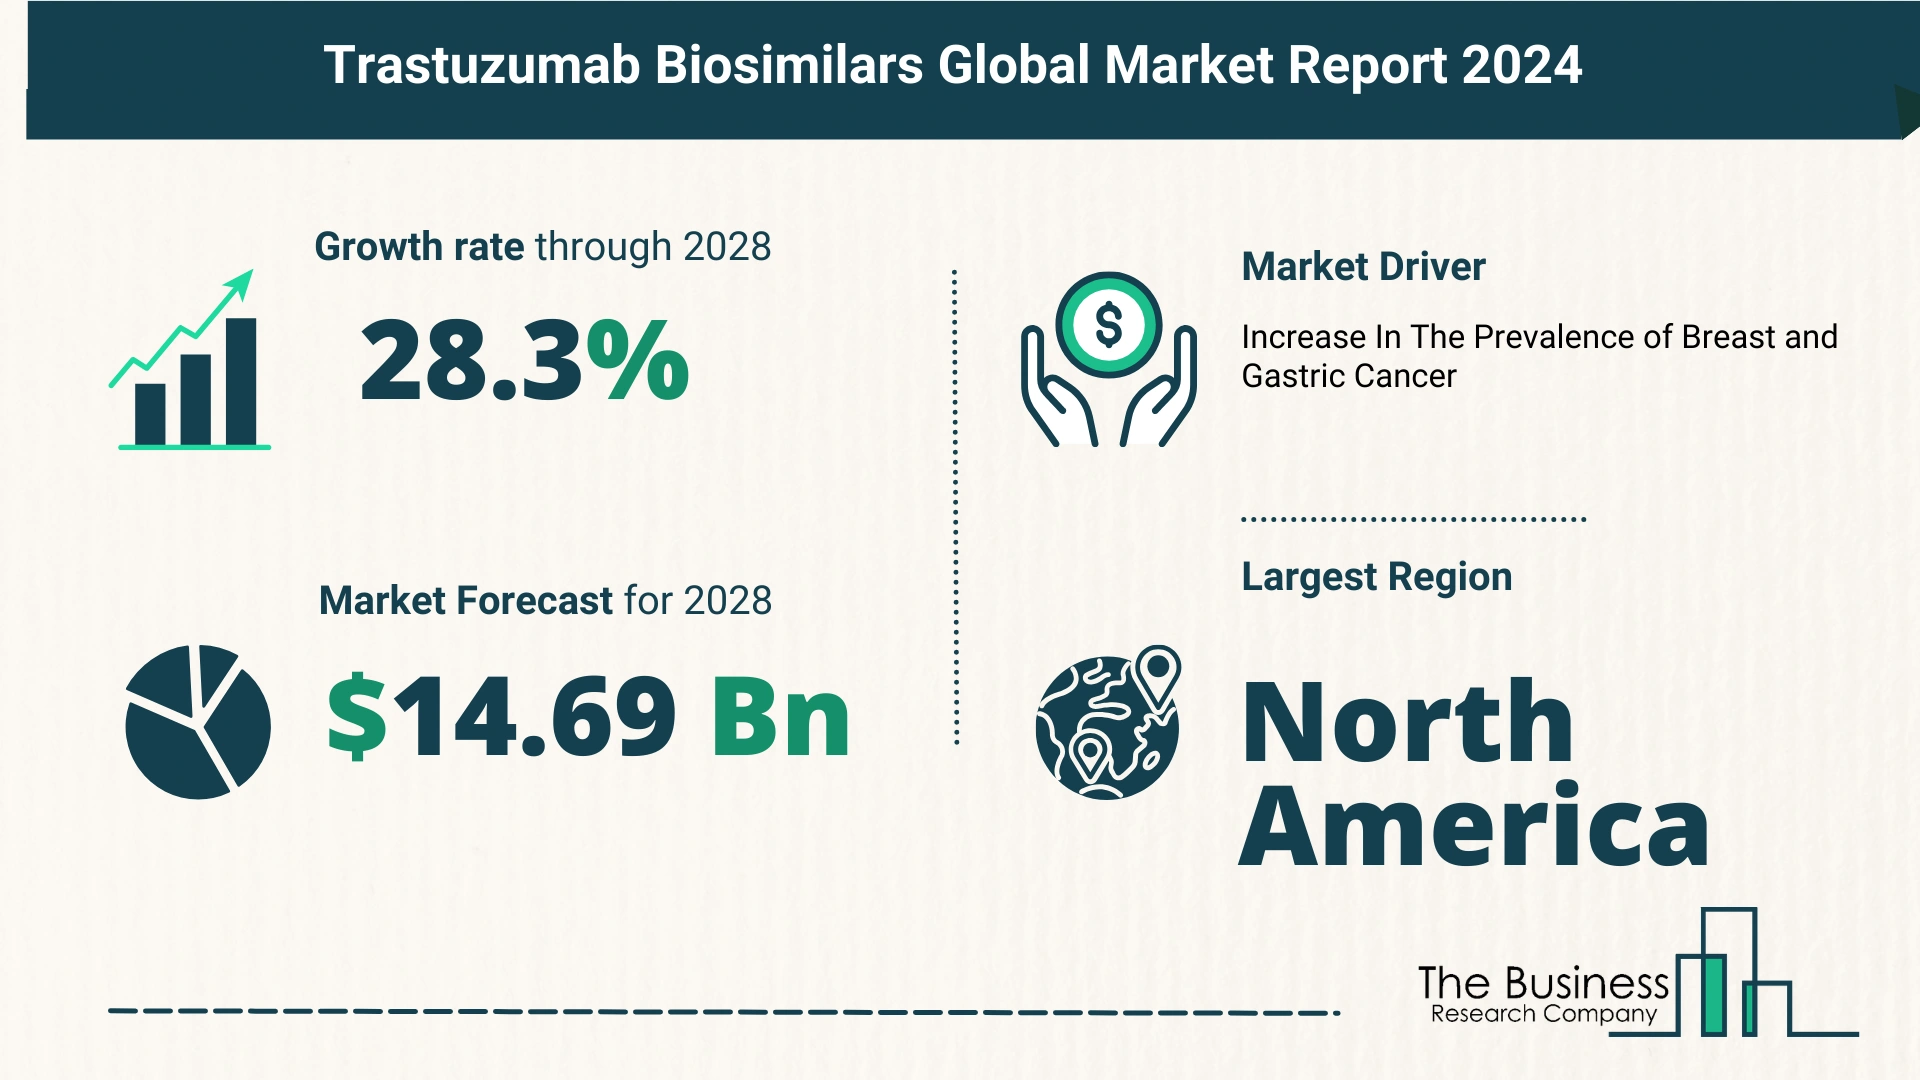 Global Trastuzumab Biosimilars Market Size